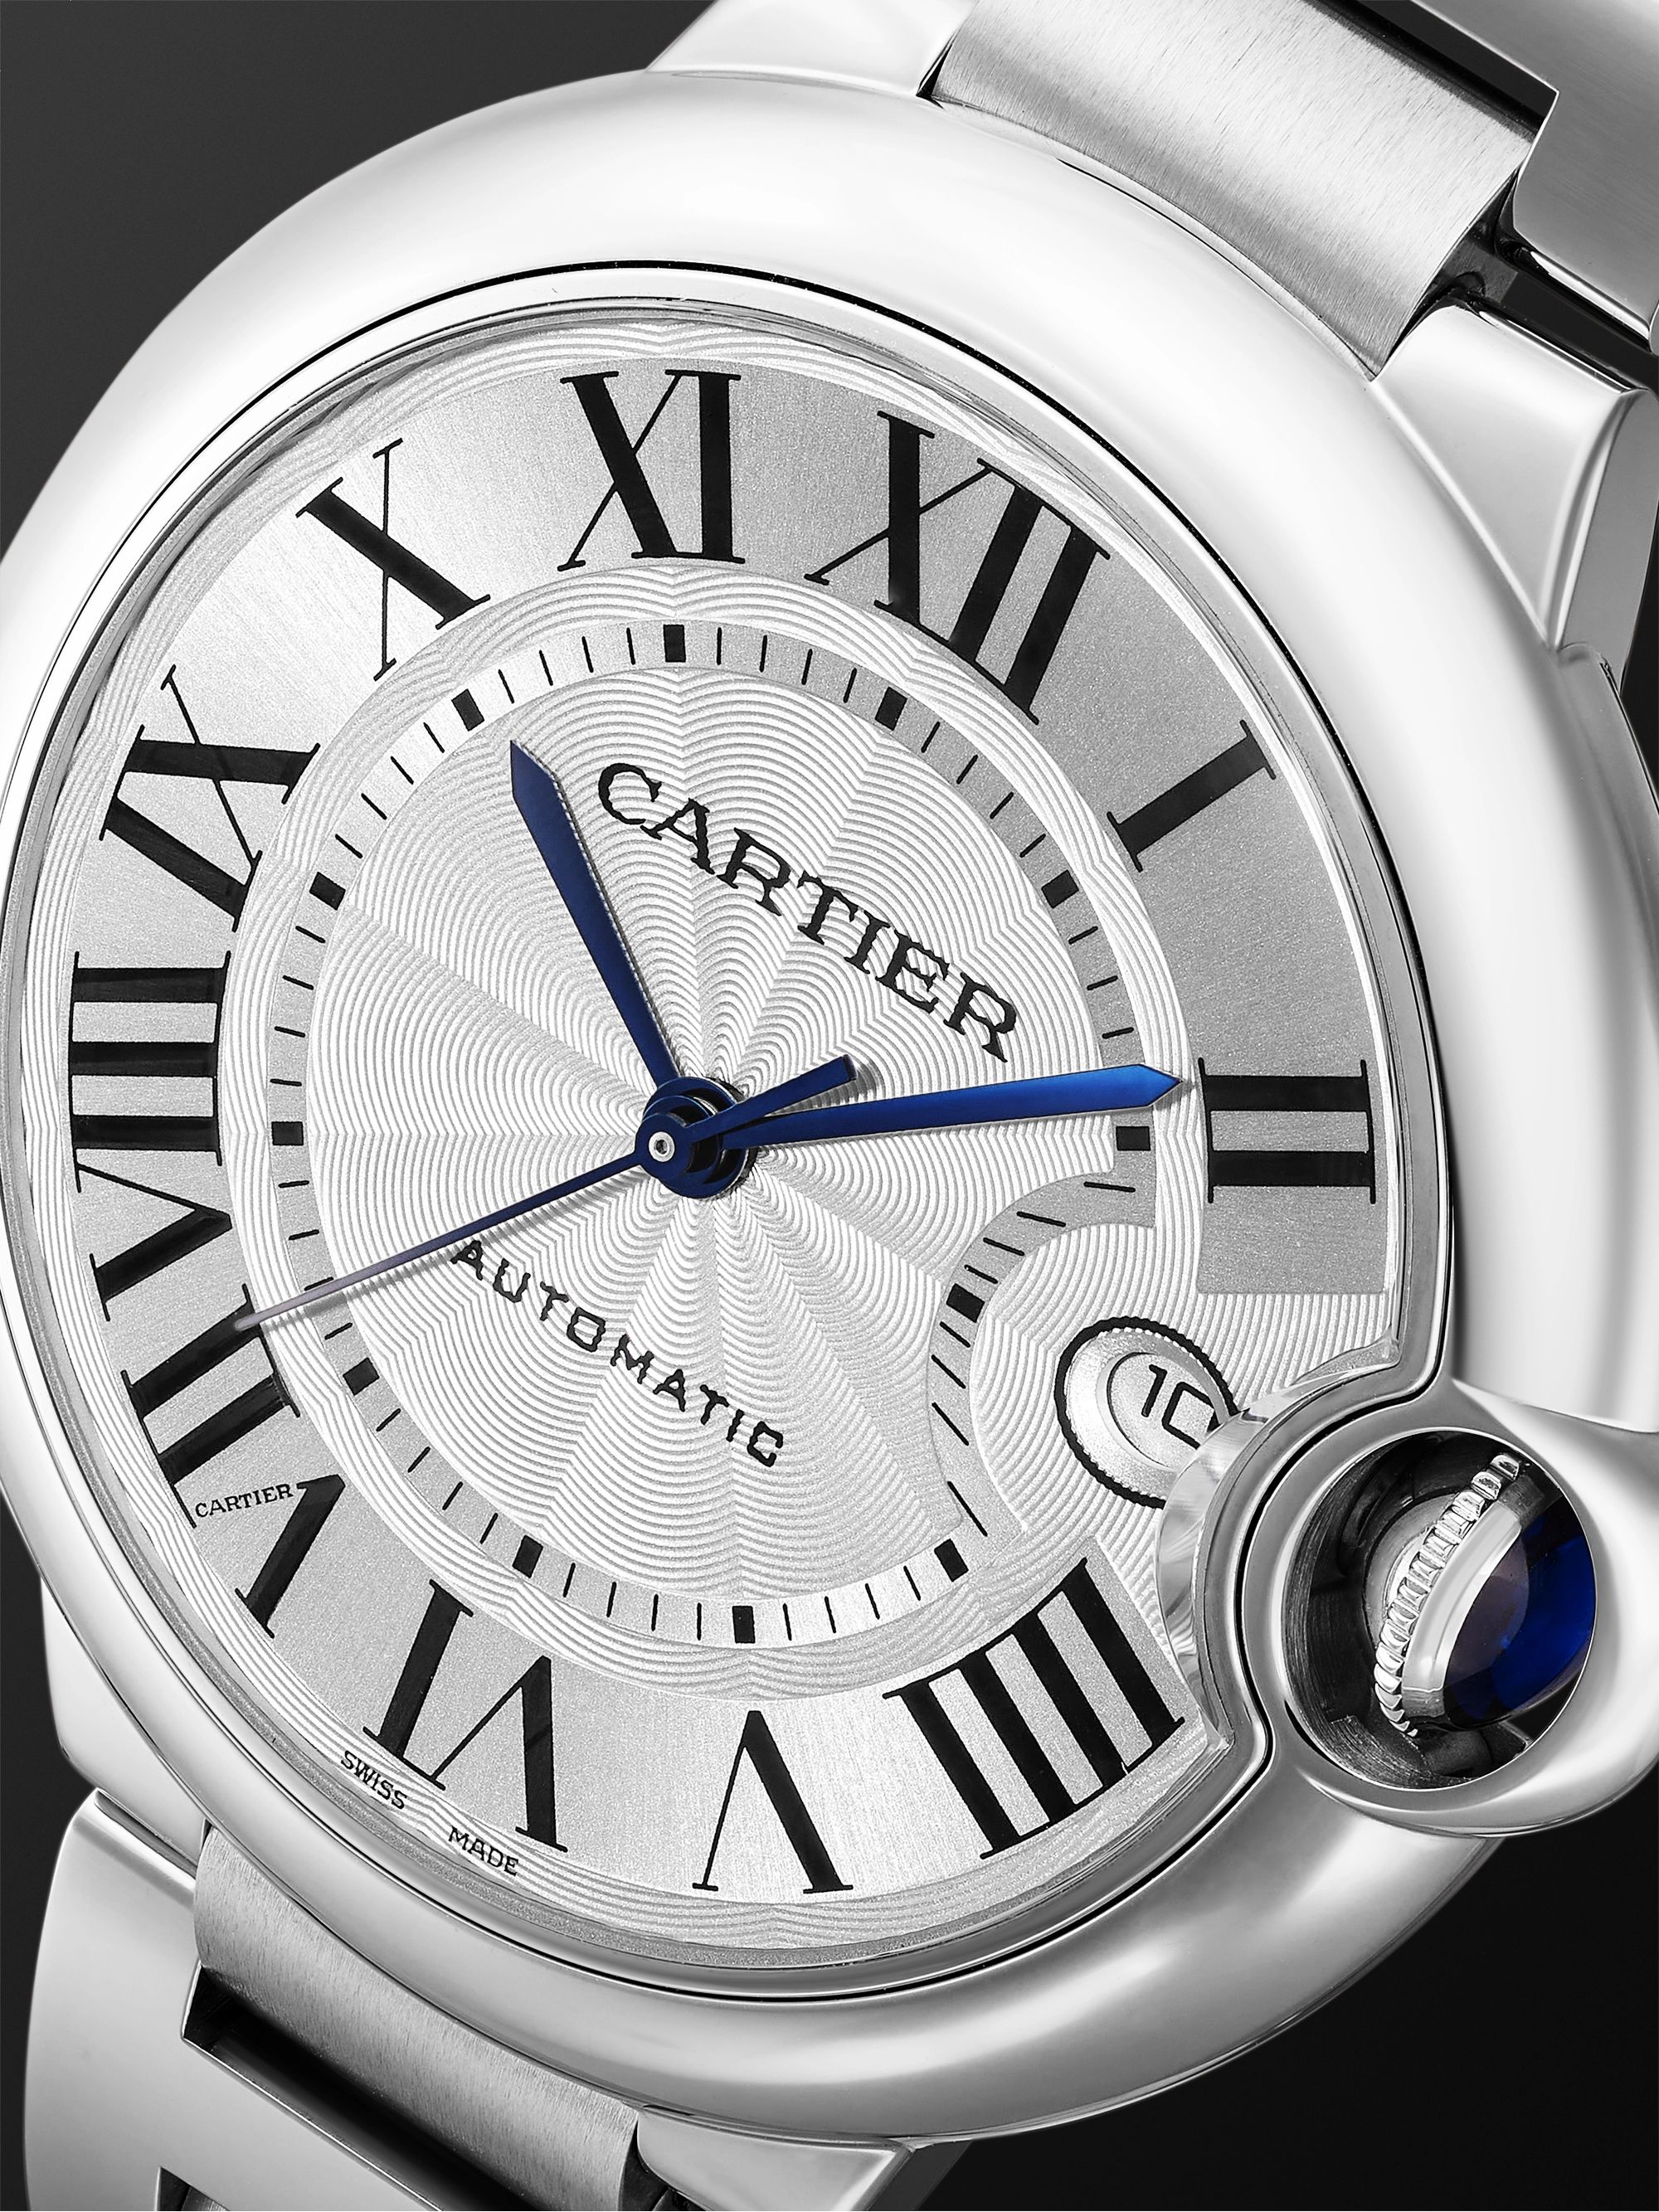 CARTIER Ballon Bleu de Cartier Automatic 40mm Stainless Steel Watch, Ref. No. WSBB0040